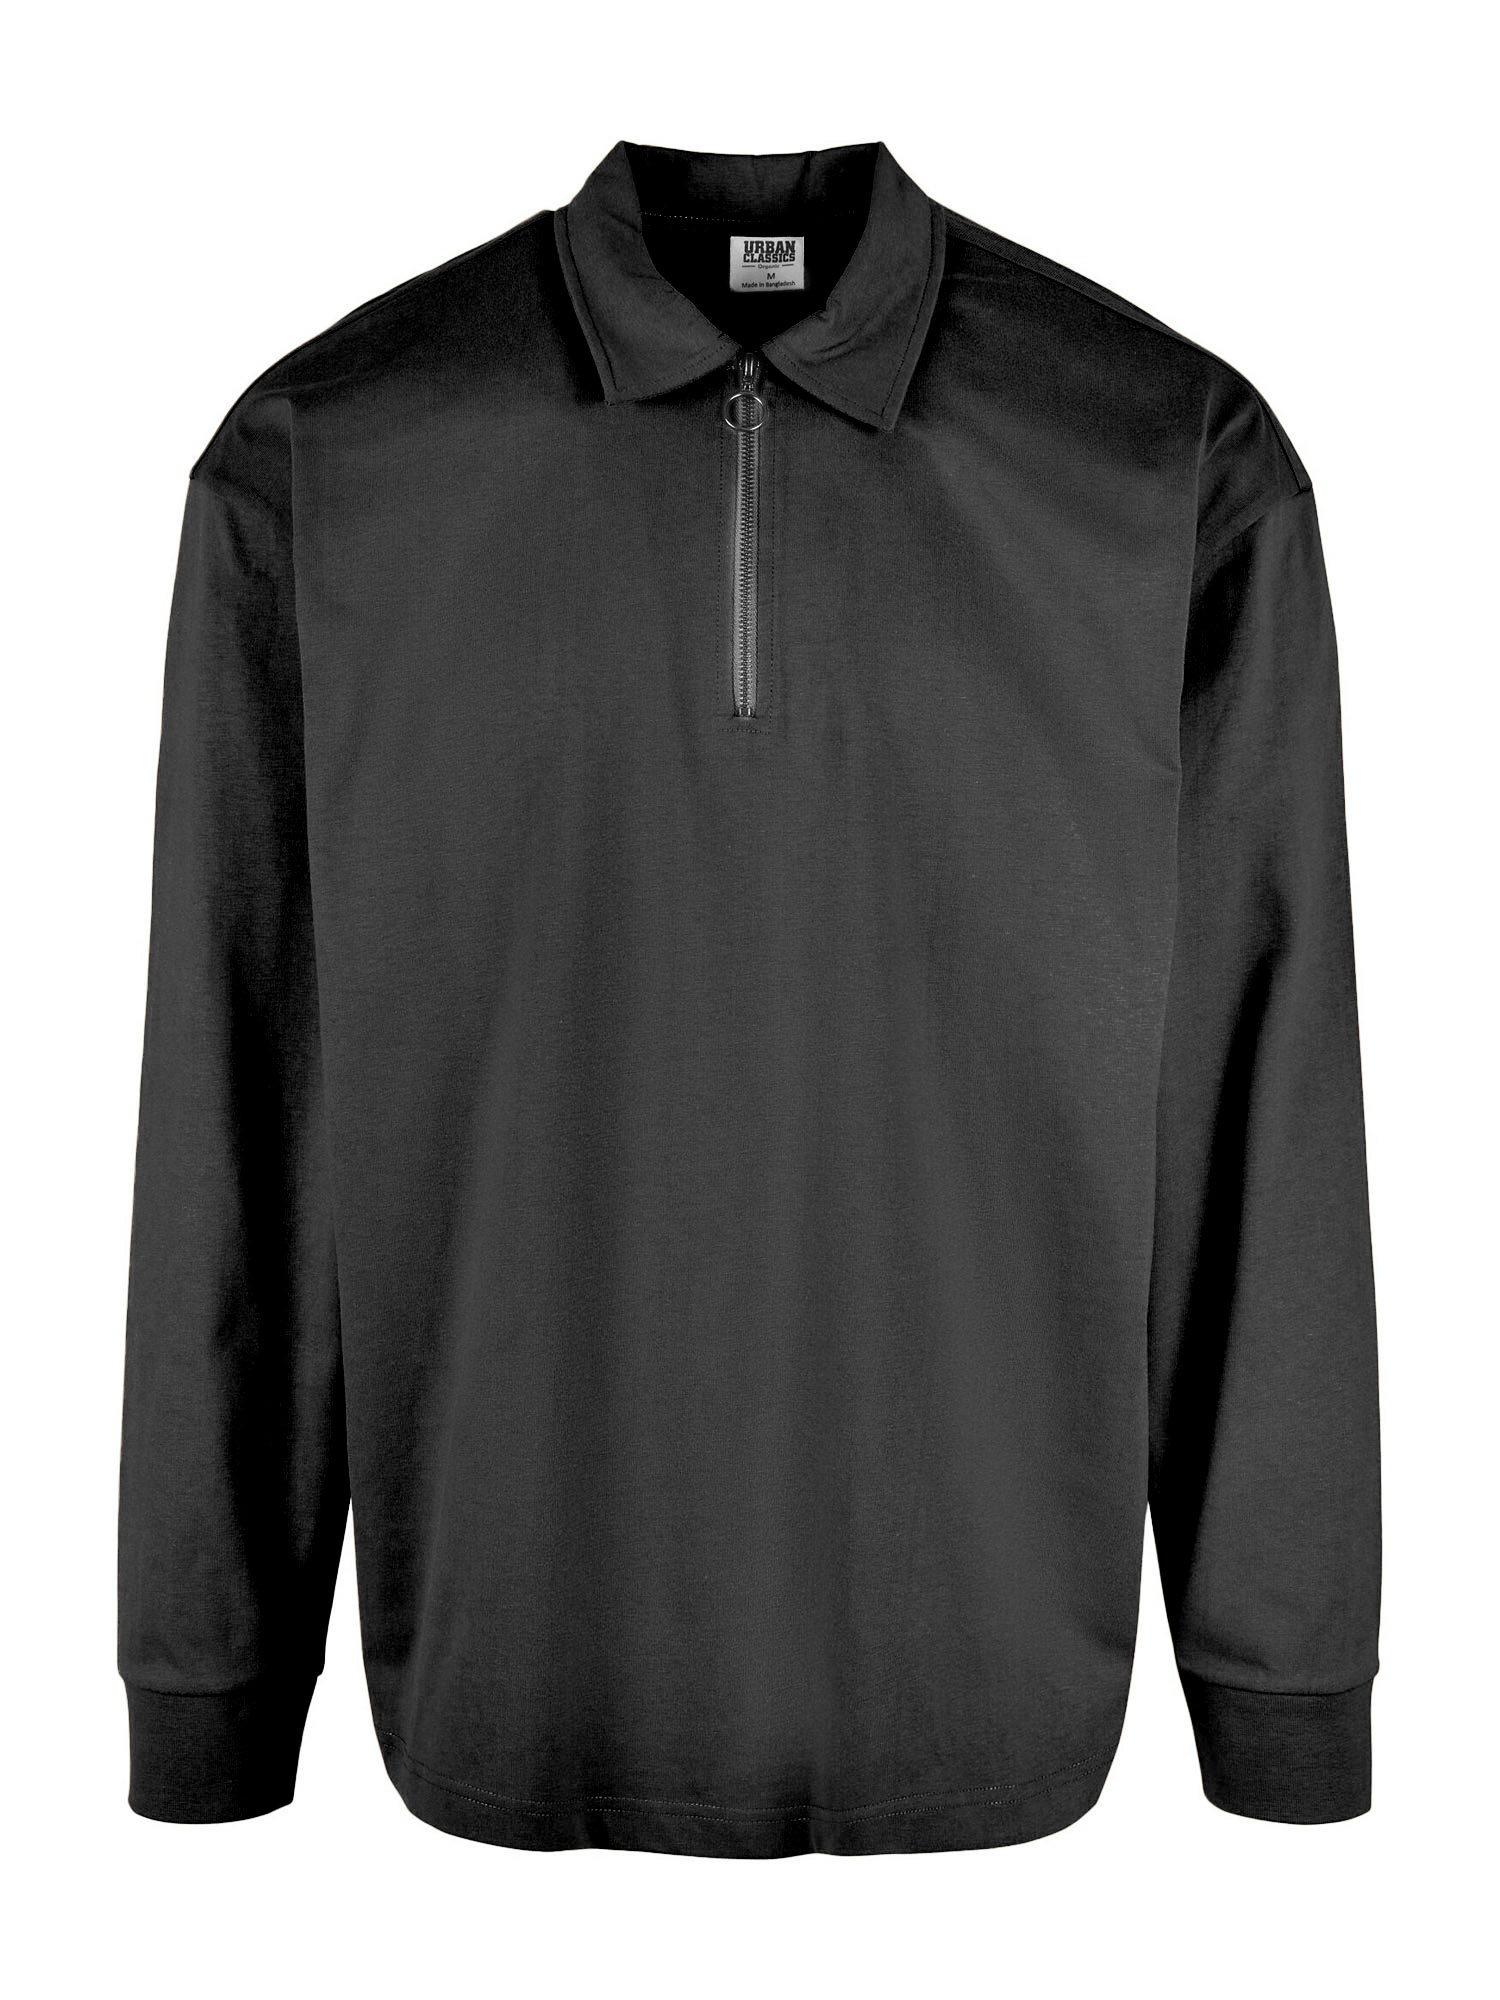 Odzież Iqt5s Urban Classics Koszulka w kolorze Czarnym 